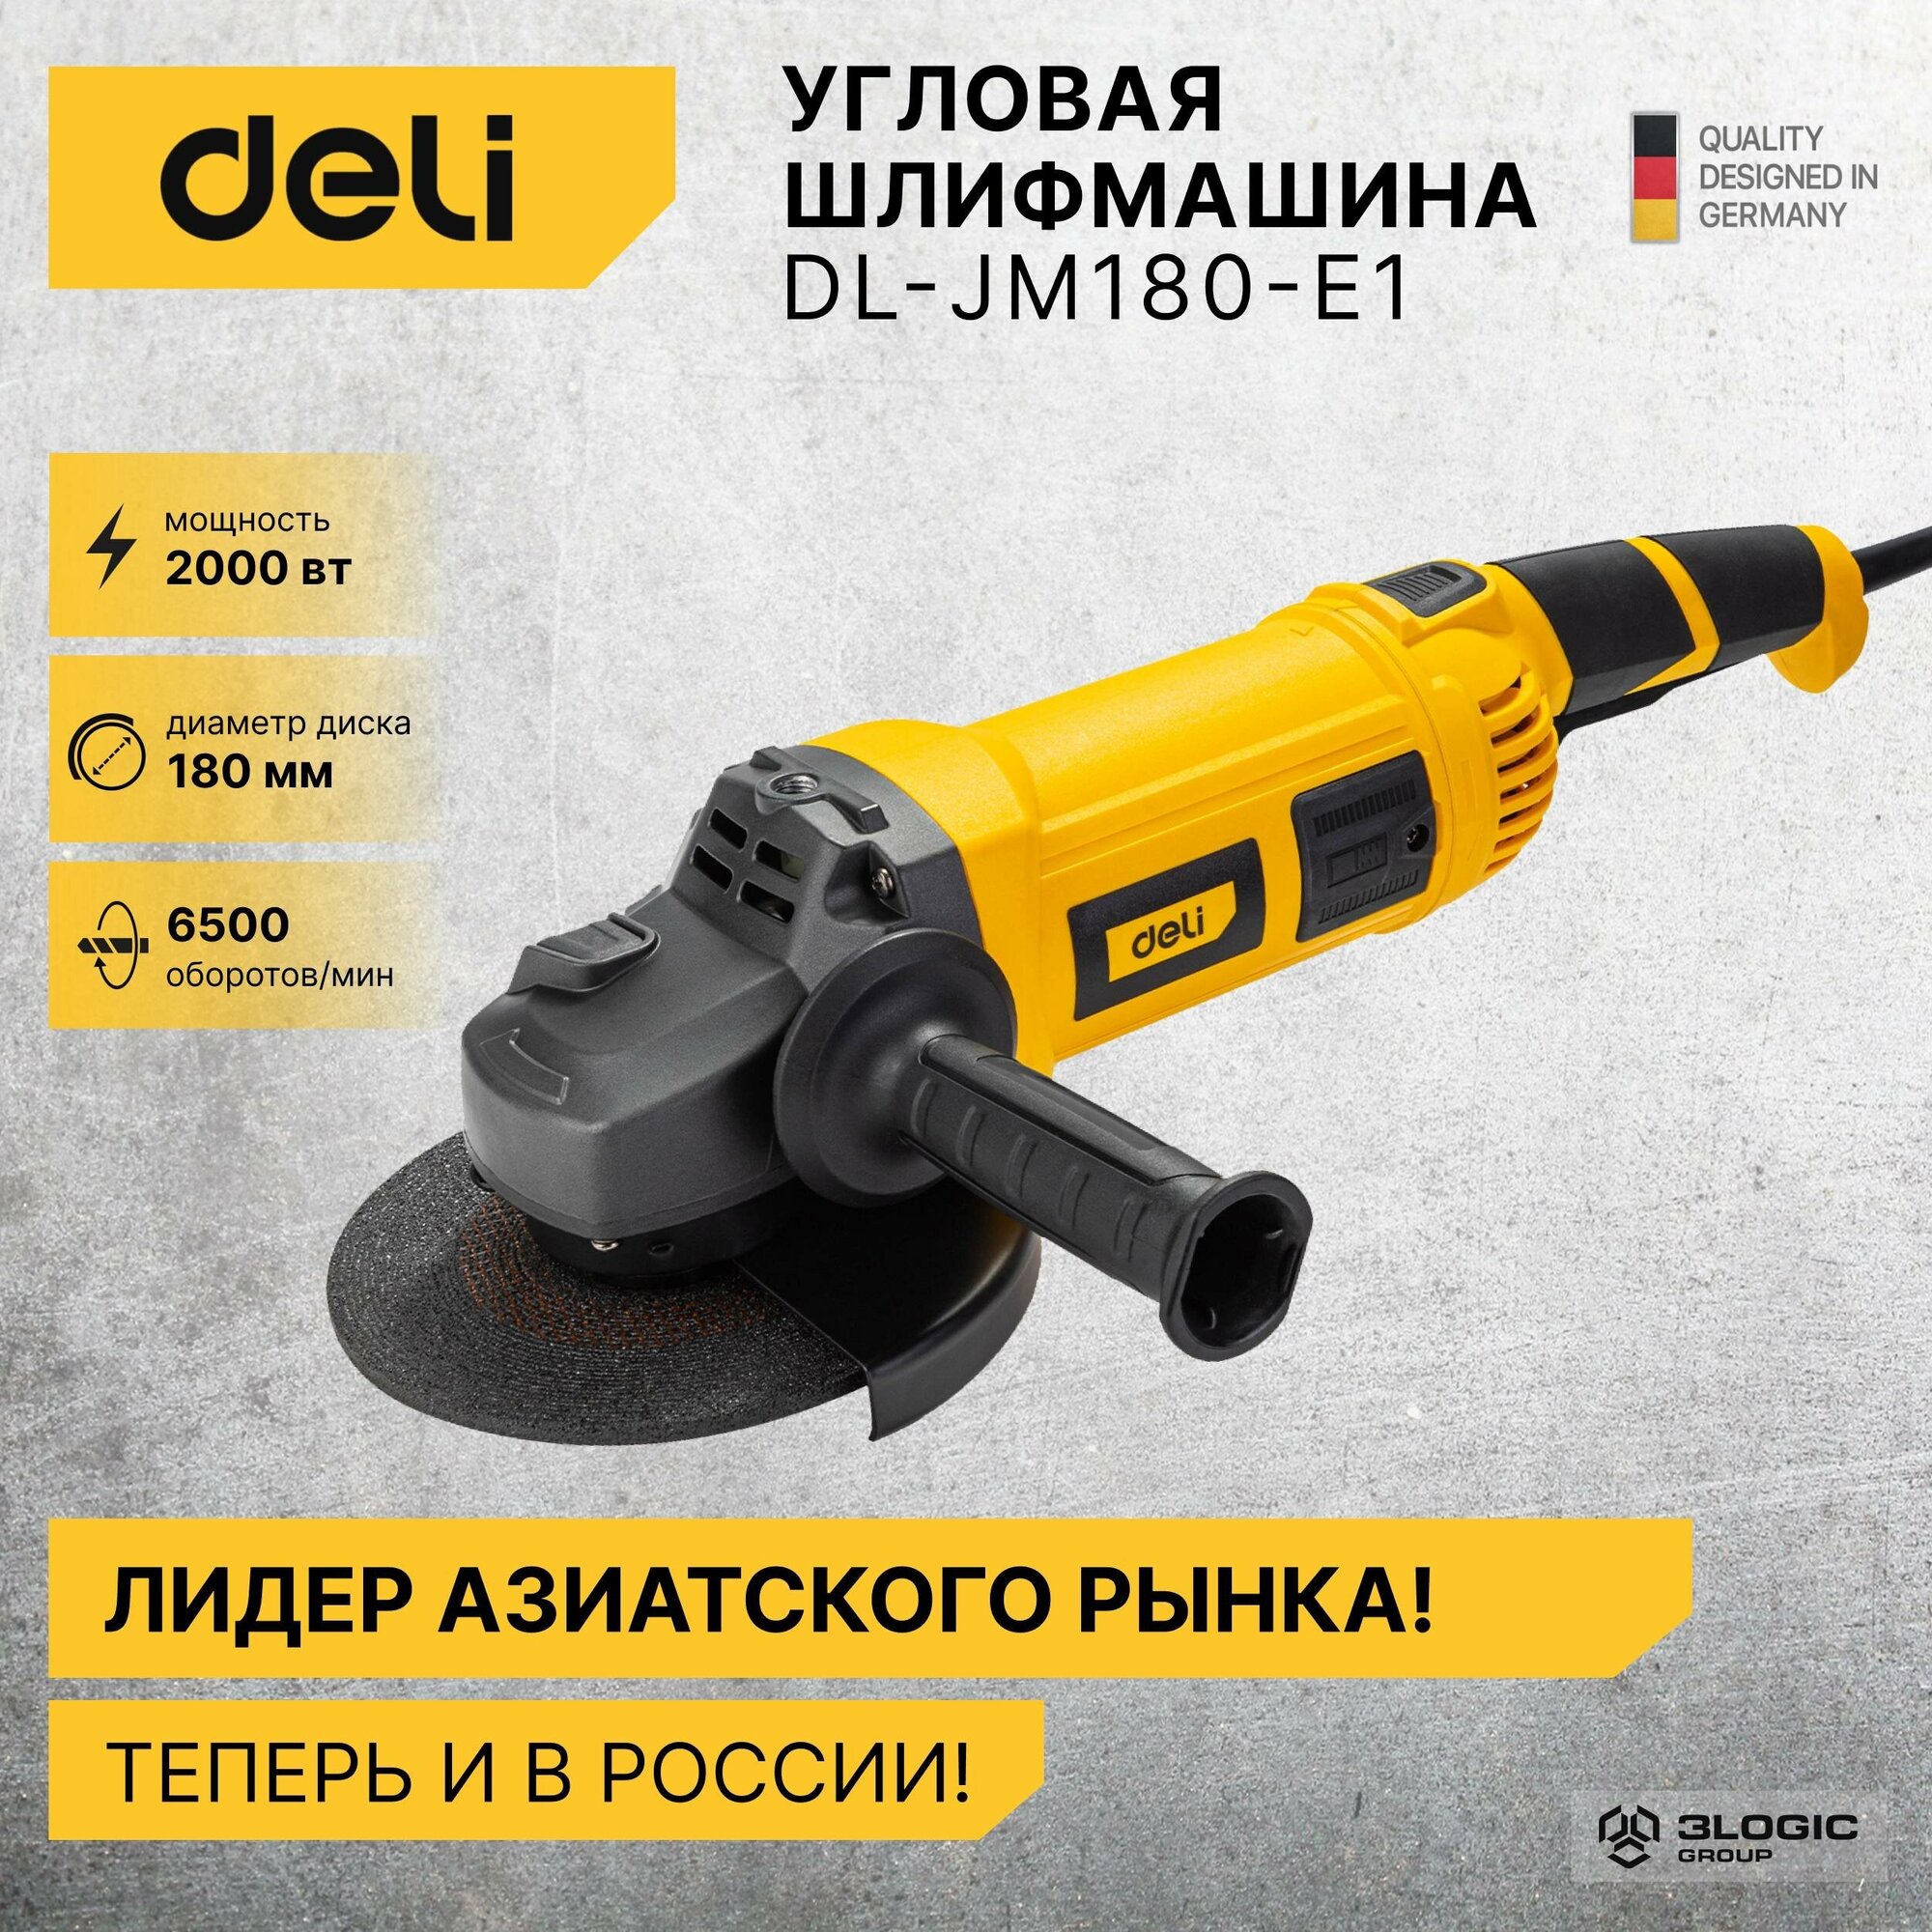 Шлифовальная машина Deli DL-JM180-E1 купить в Красноярске